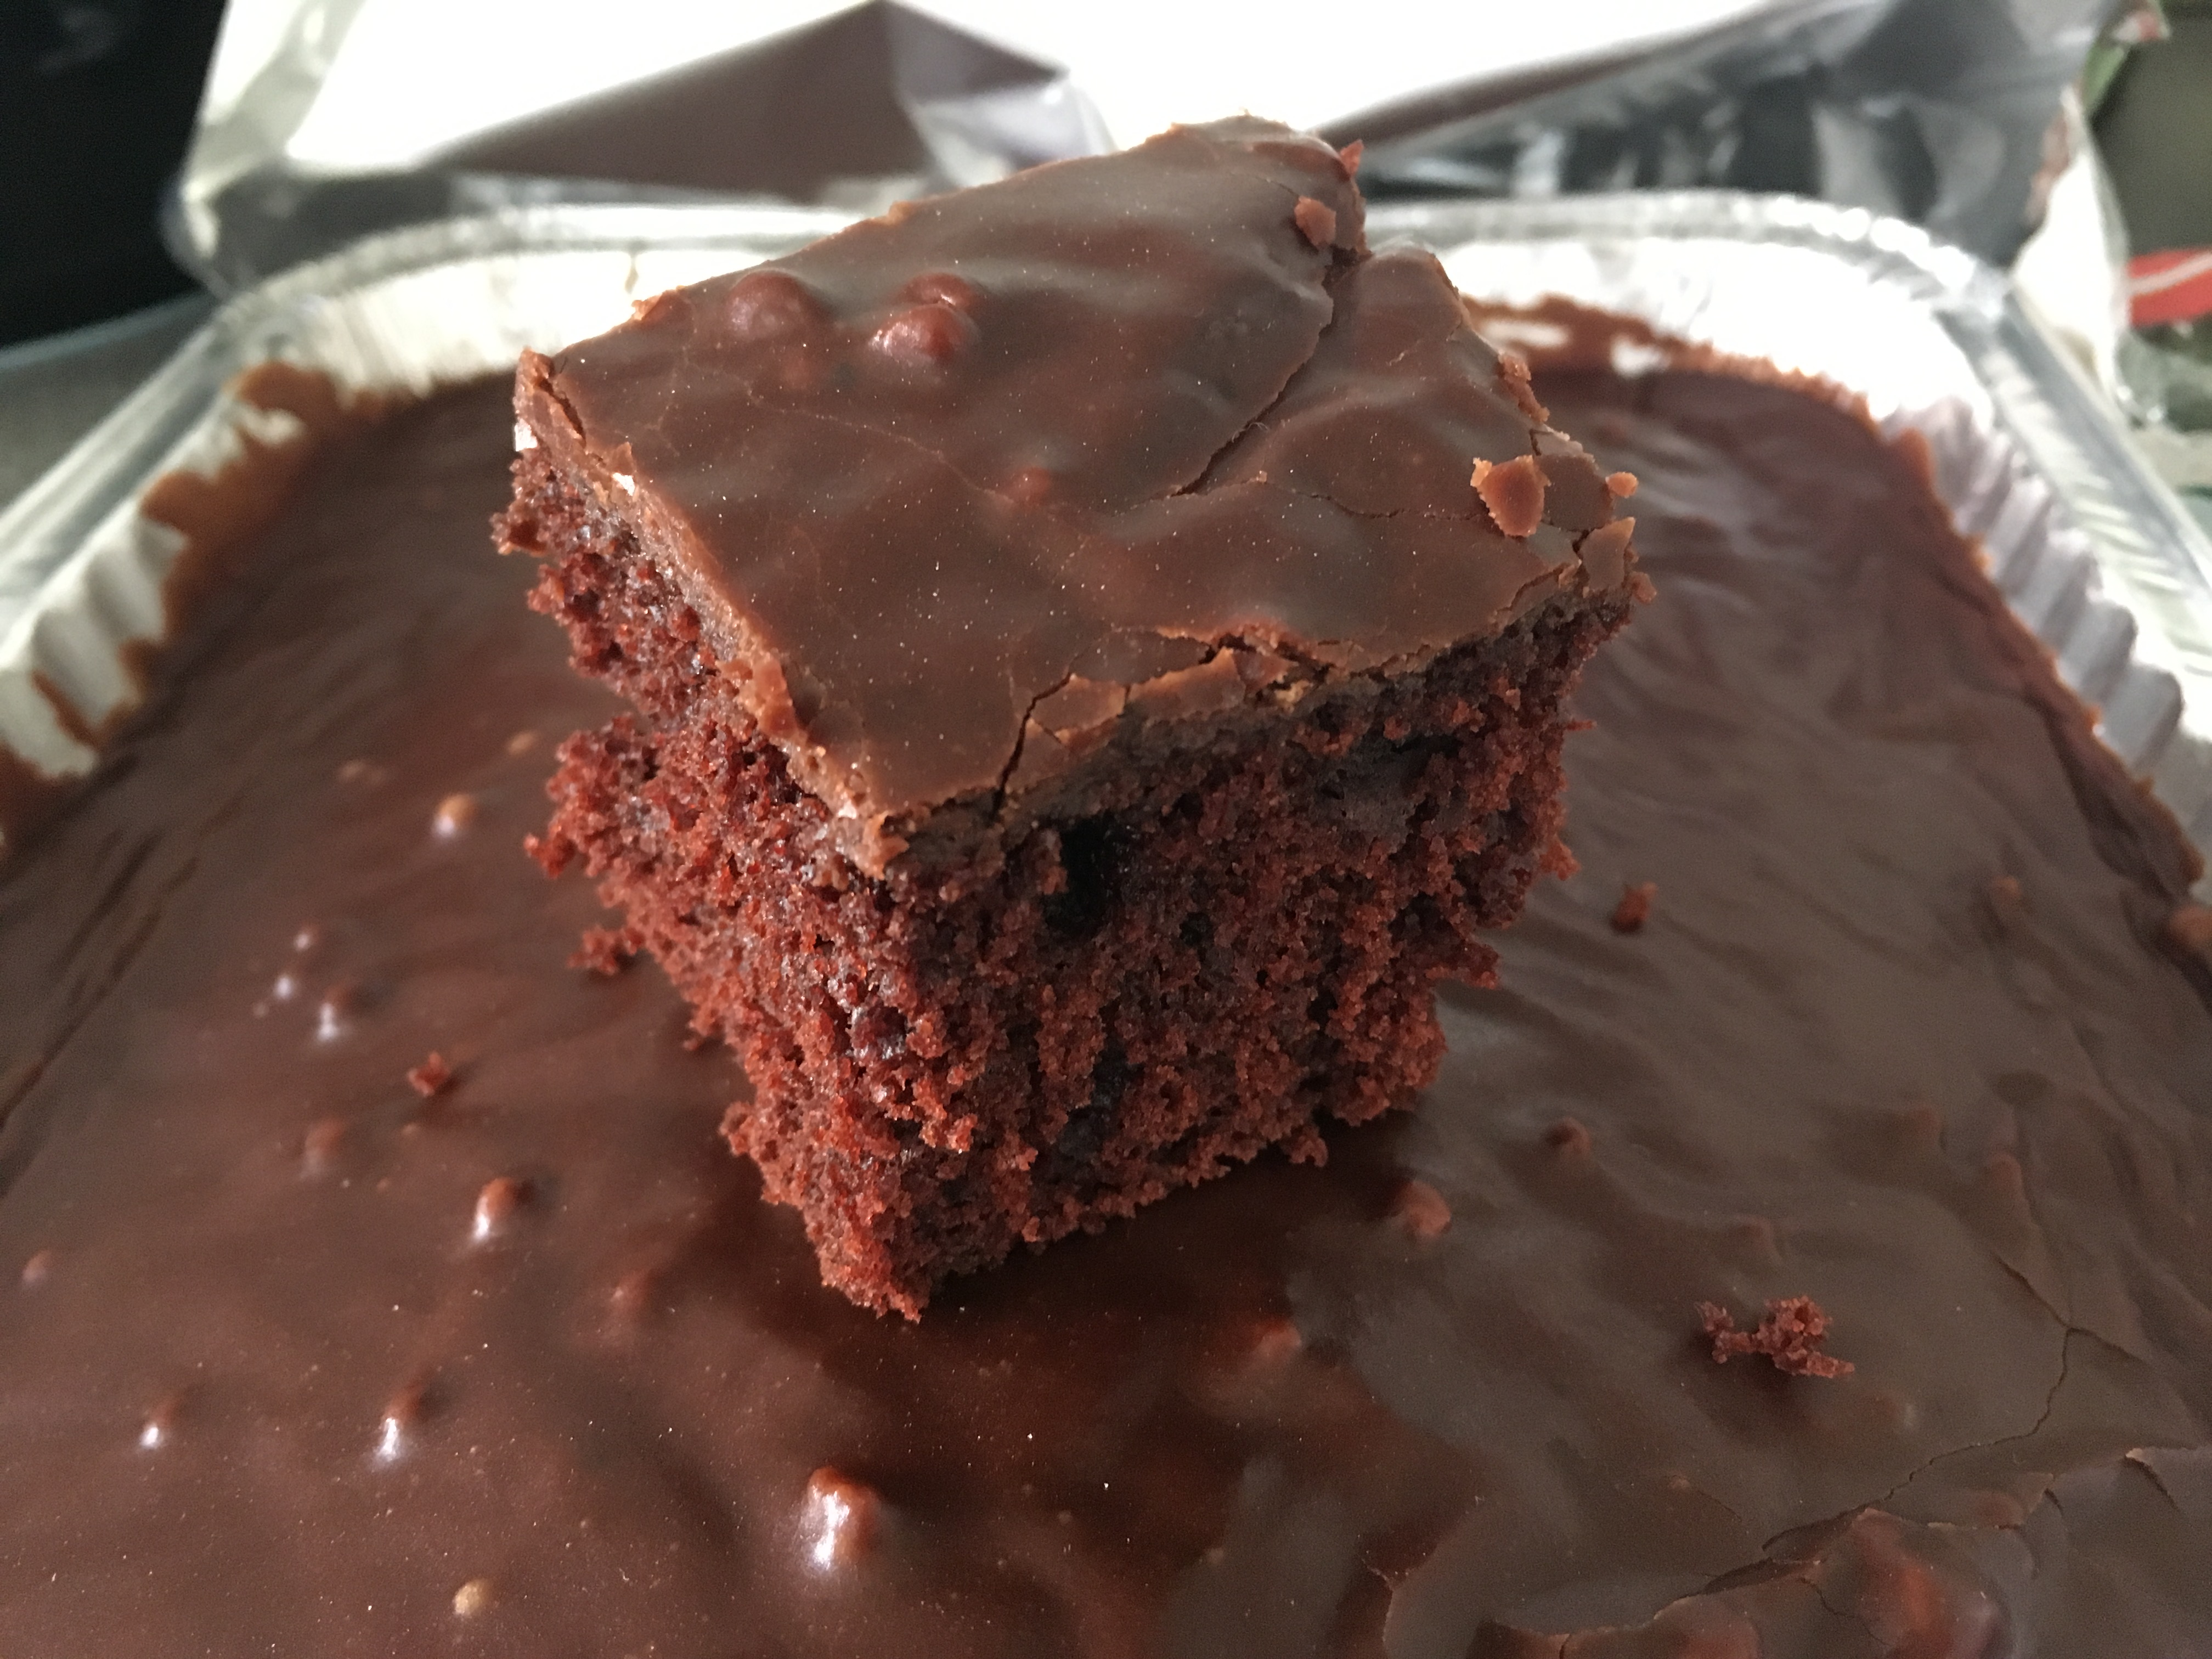 47/52 – Chokoladekage, sådan en klassisk en